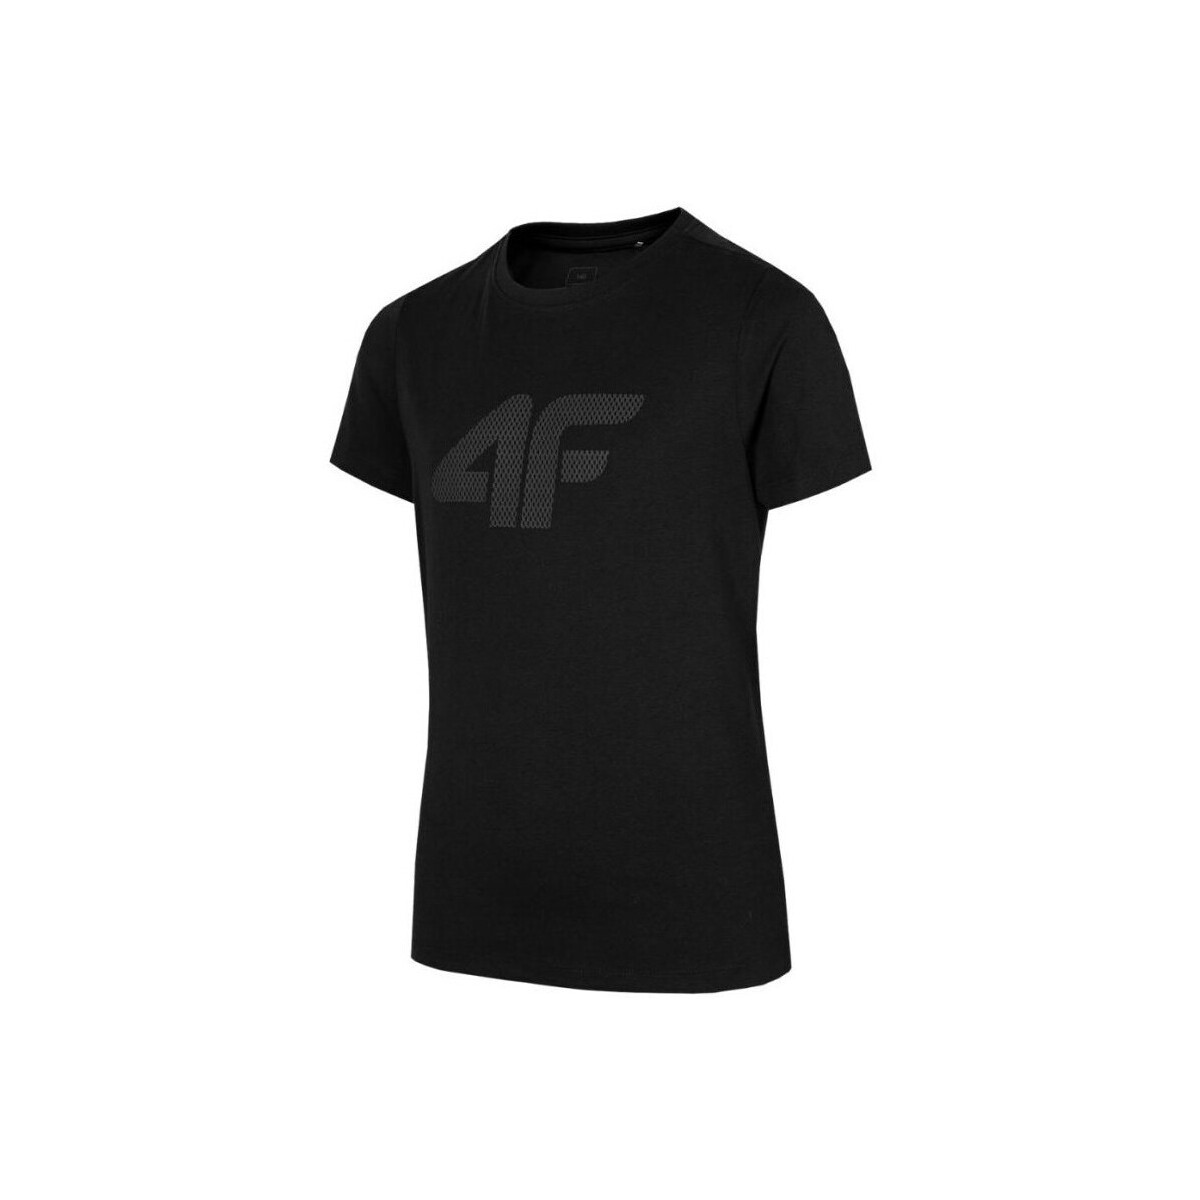 Kleidung Jungen T-Shirts 4F JTSM002 Schwarz